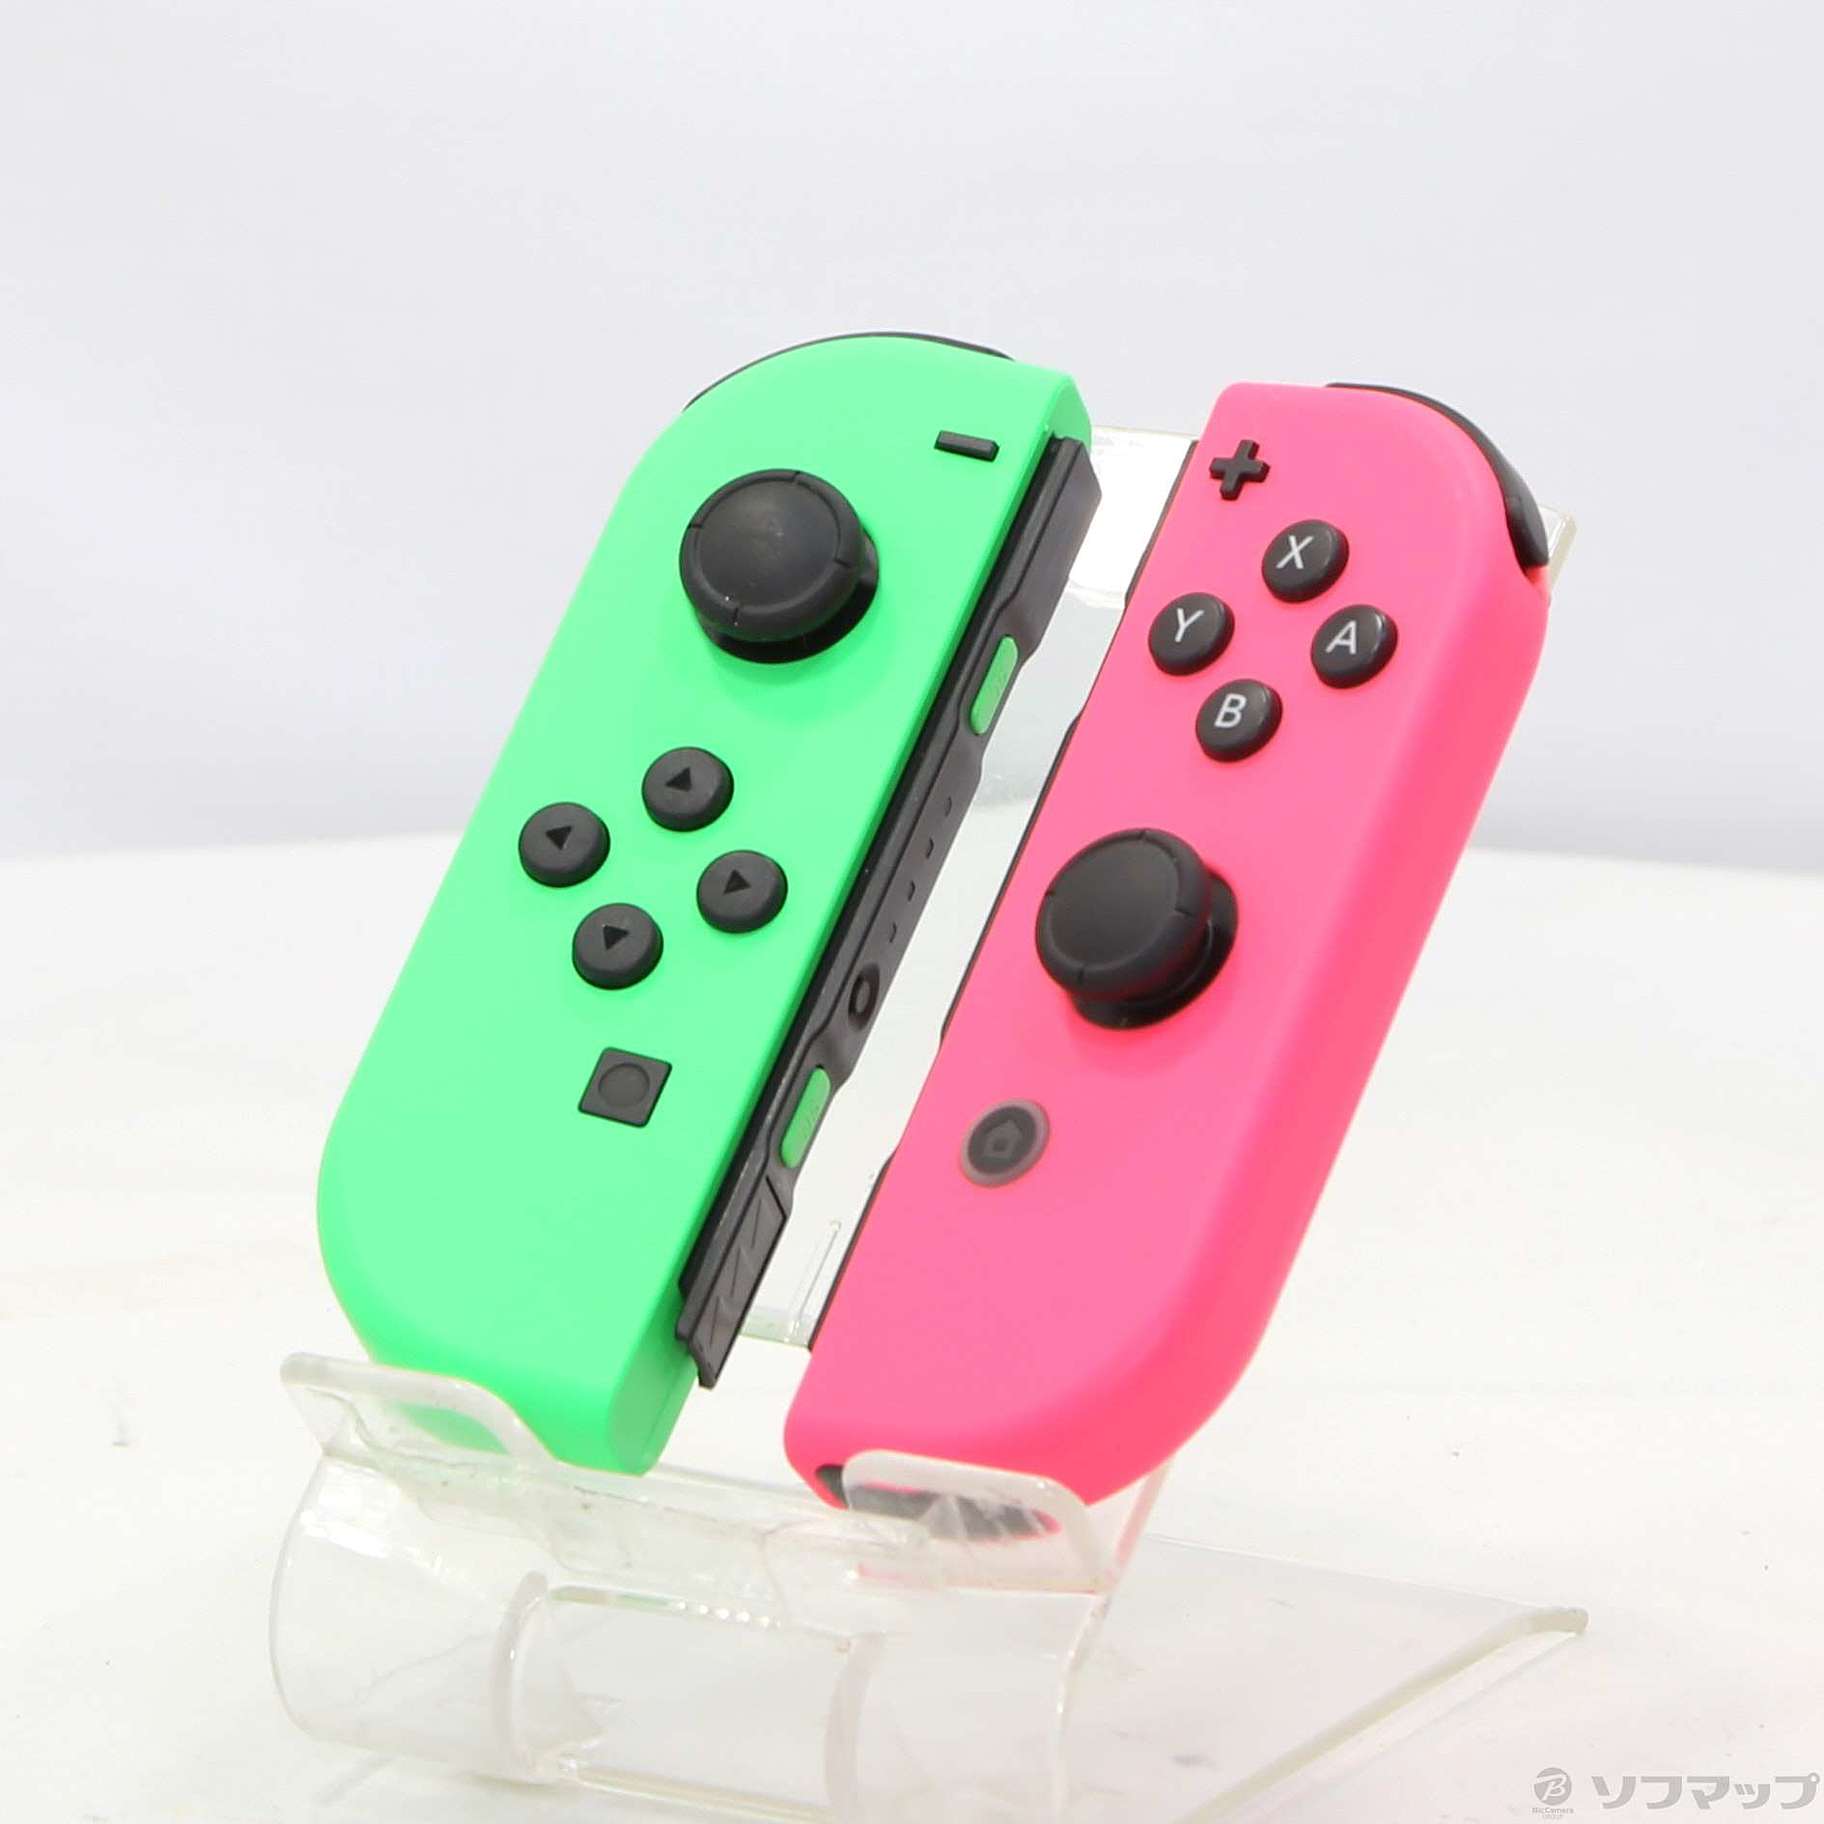 新品 Nintendo Switch Joy-Con グリーン/ピンク